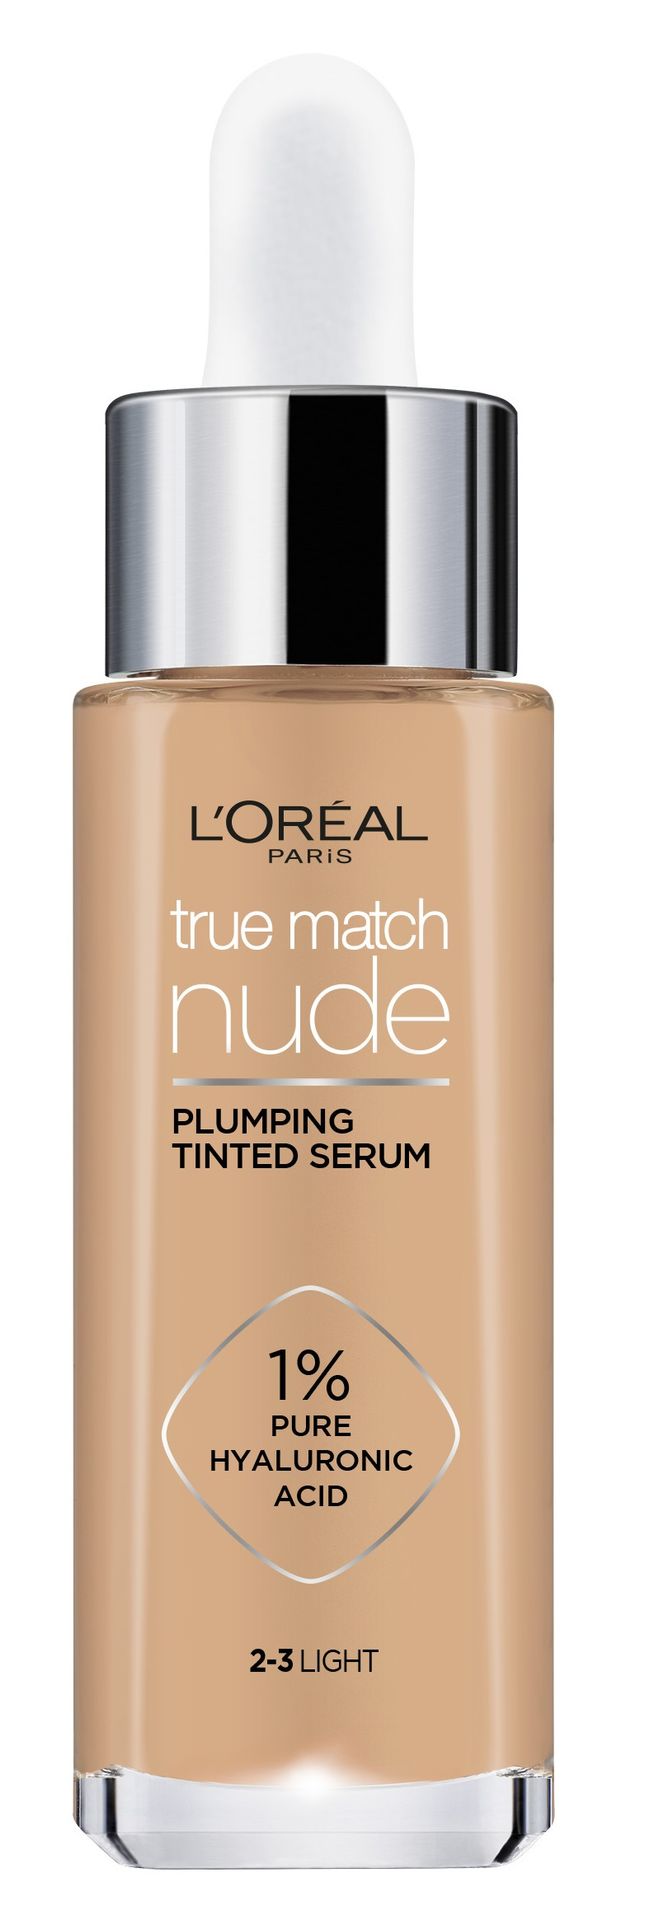 Loreal Paris Paris True Match Nude Plumping Tinted Serum serum do ujednolicenia kolorytu skóry odcień 2-3 Light 30 ml